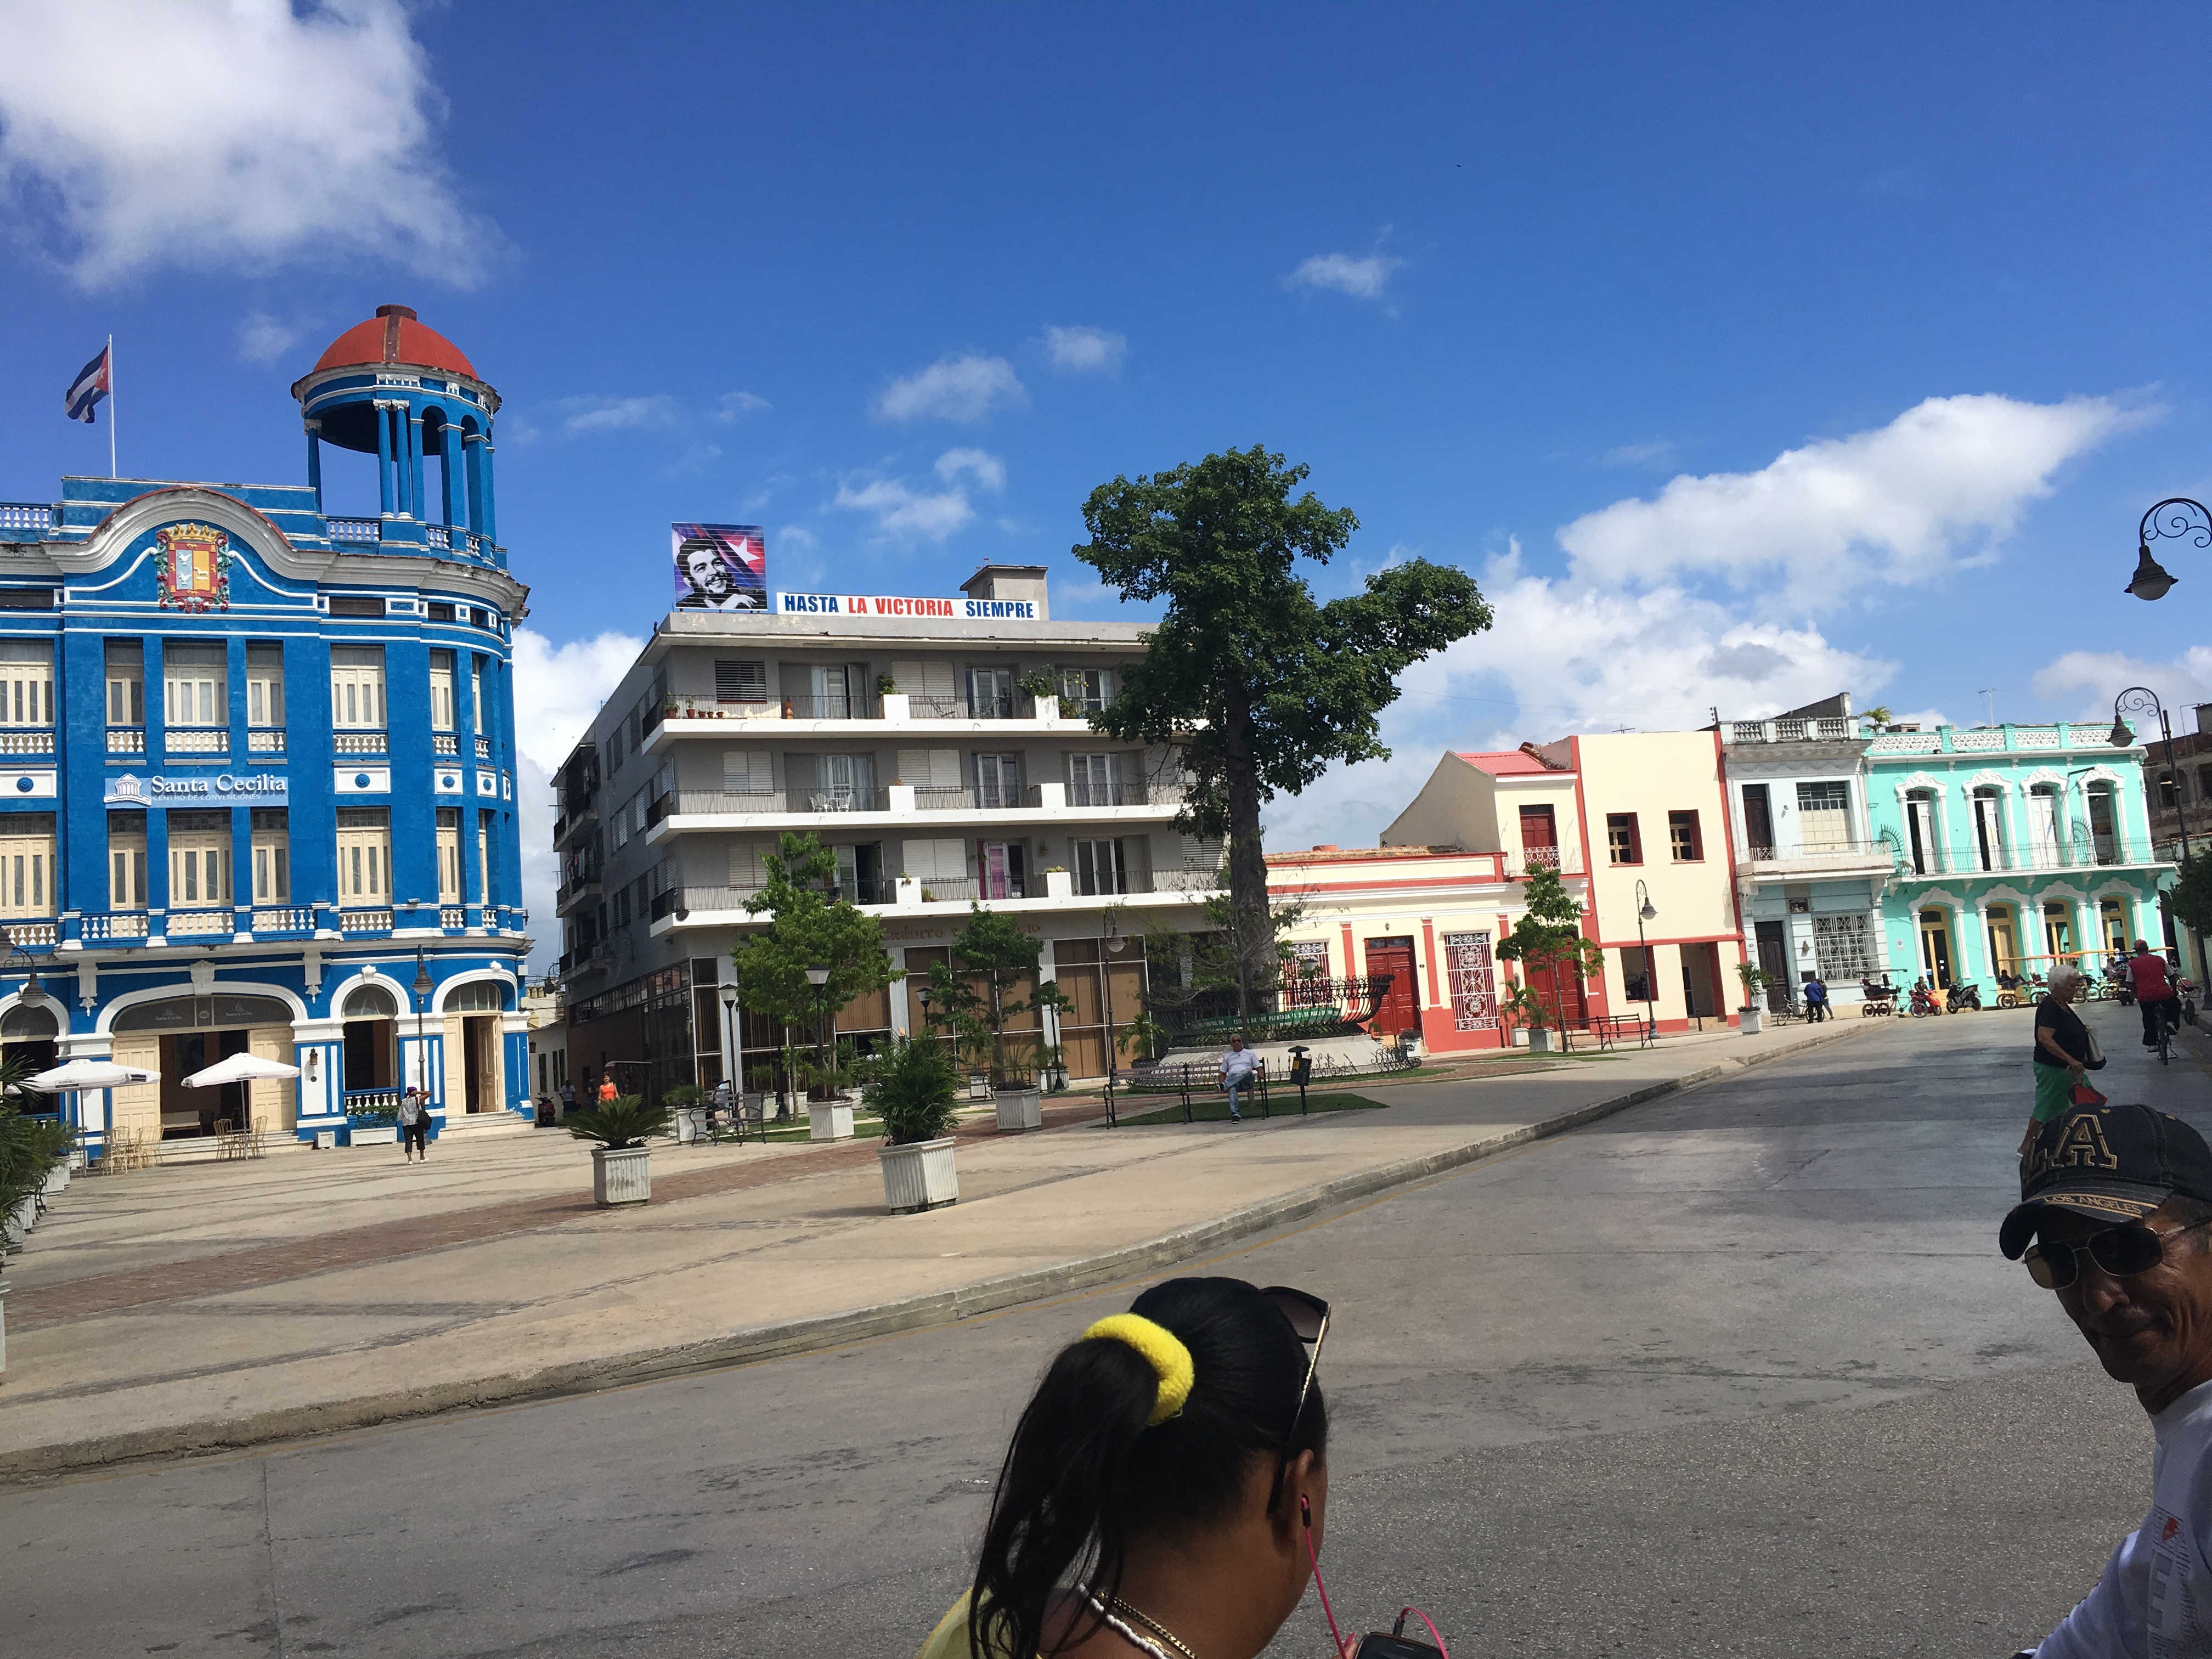 アメリカからキューバへ格安渡航して別室送りにされた体験談19最新 アメリカで稼ぐ 冒険好きアボカドおじさん デュース の駐在員ブログ